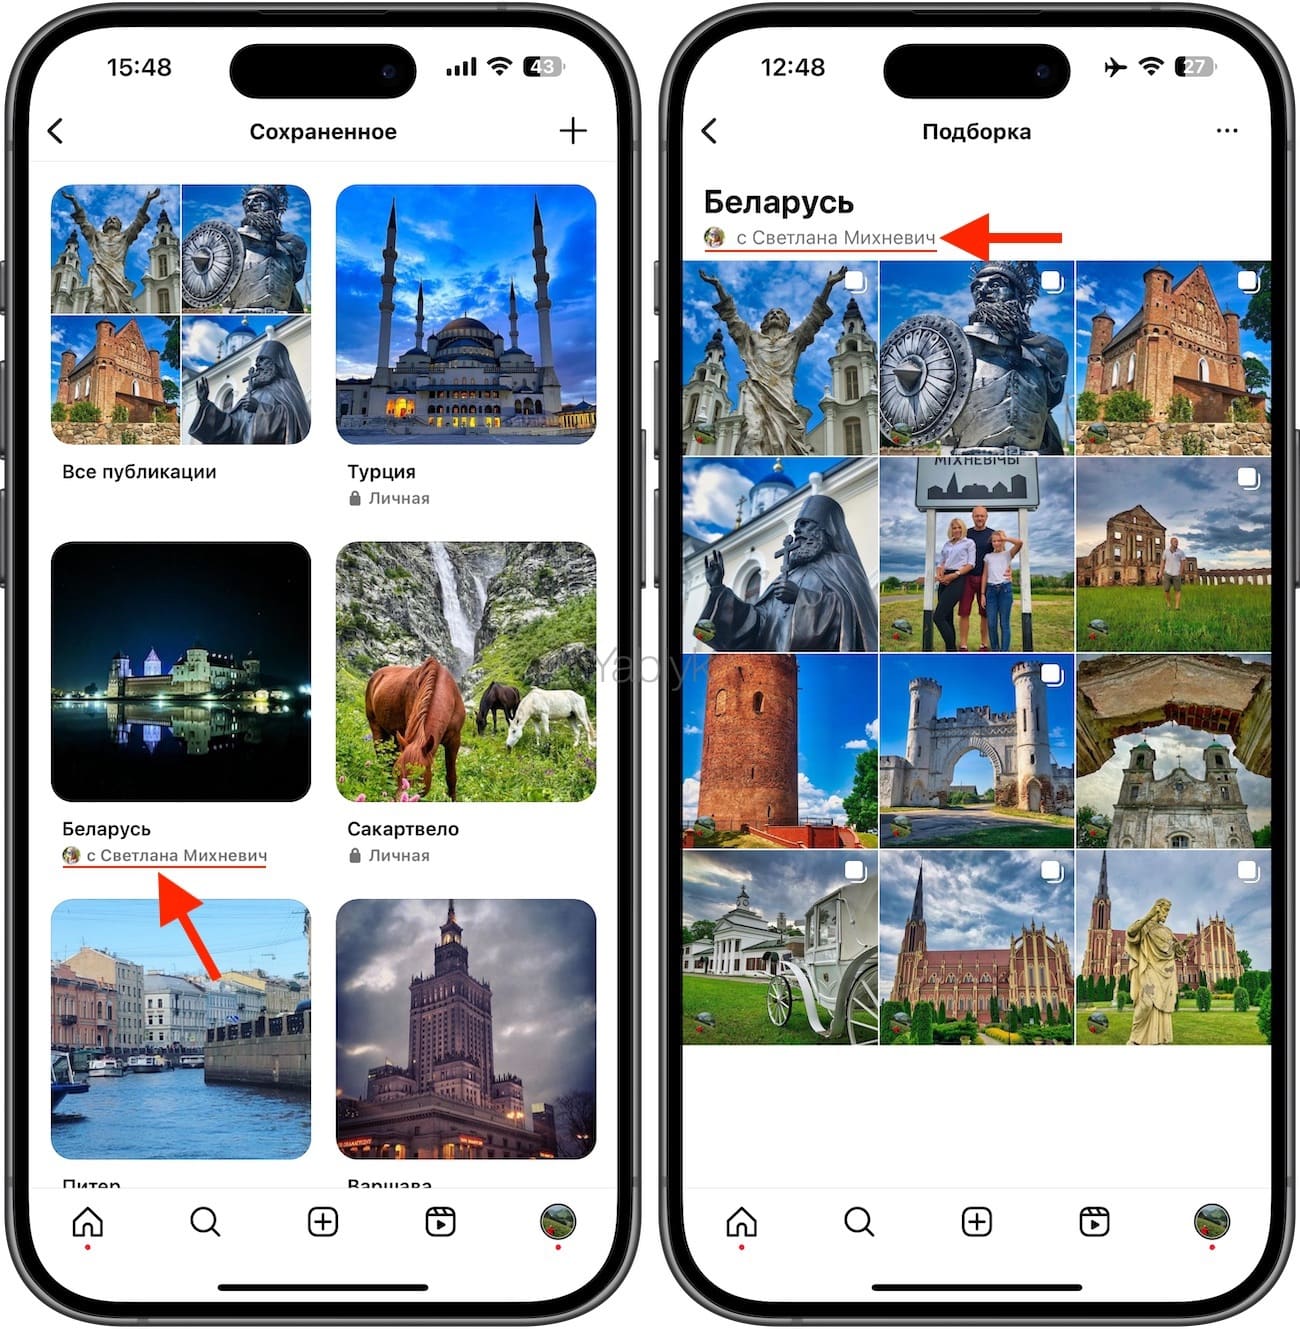 Как делиться фотографиями и видео - Android - Cправка - Google Фото